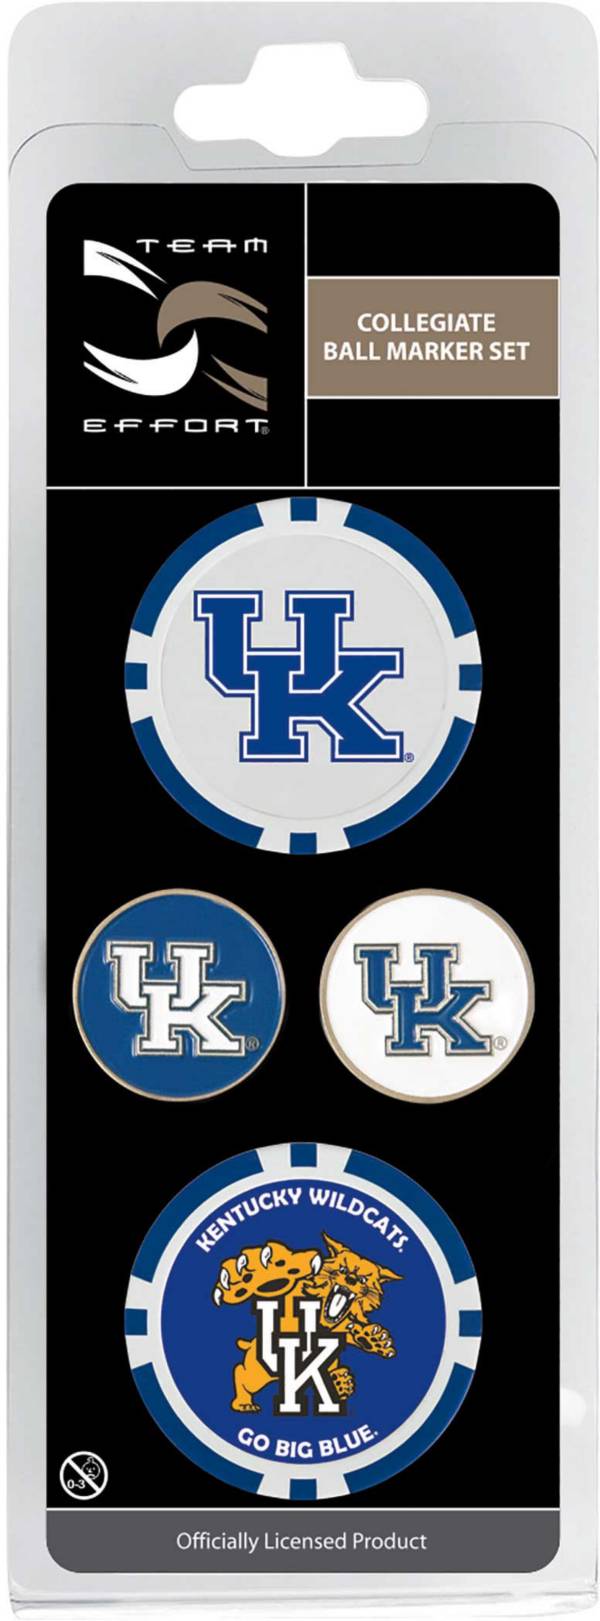 Team Effort Kentucky Wildcats Ball Marker Set product image